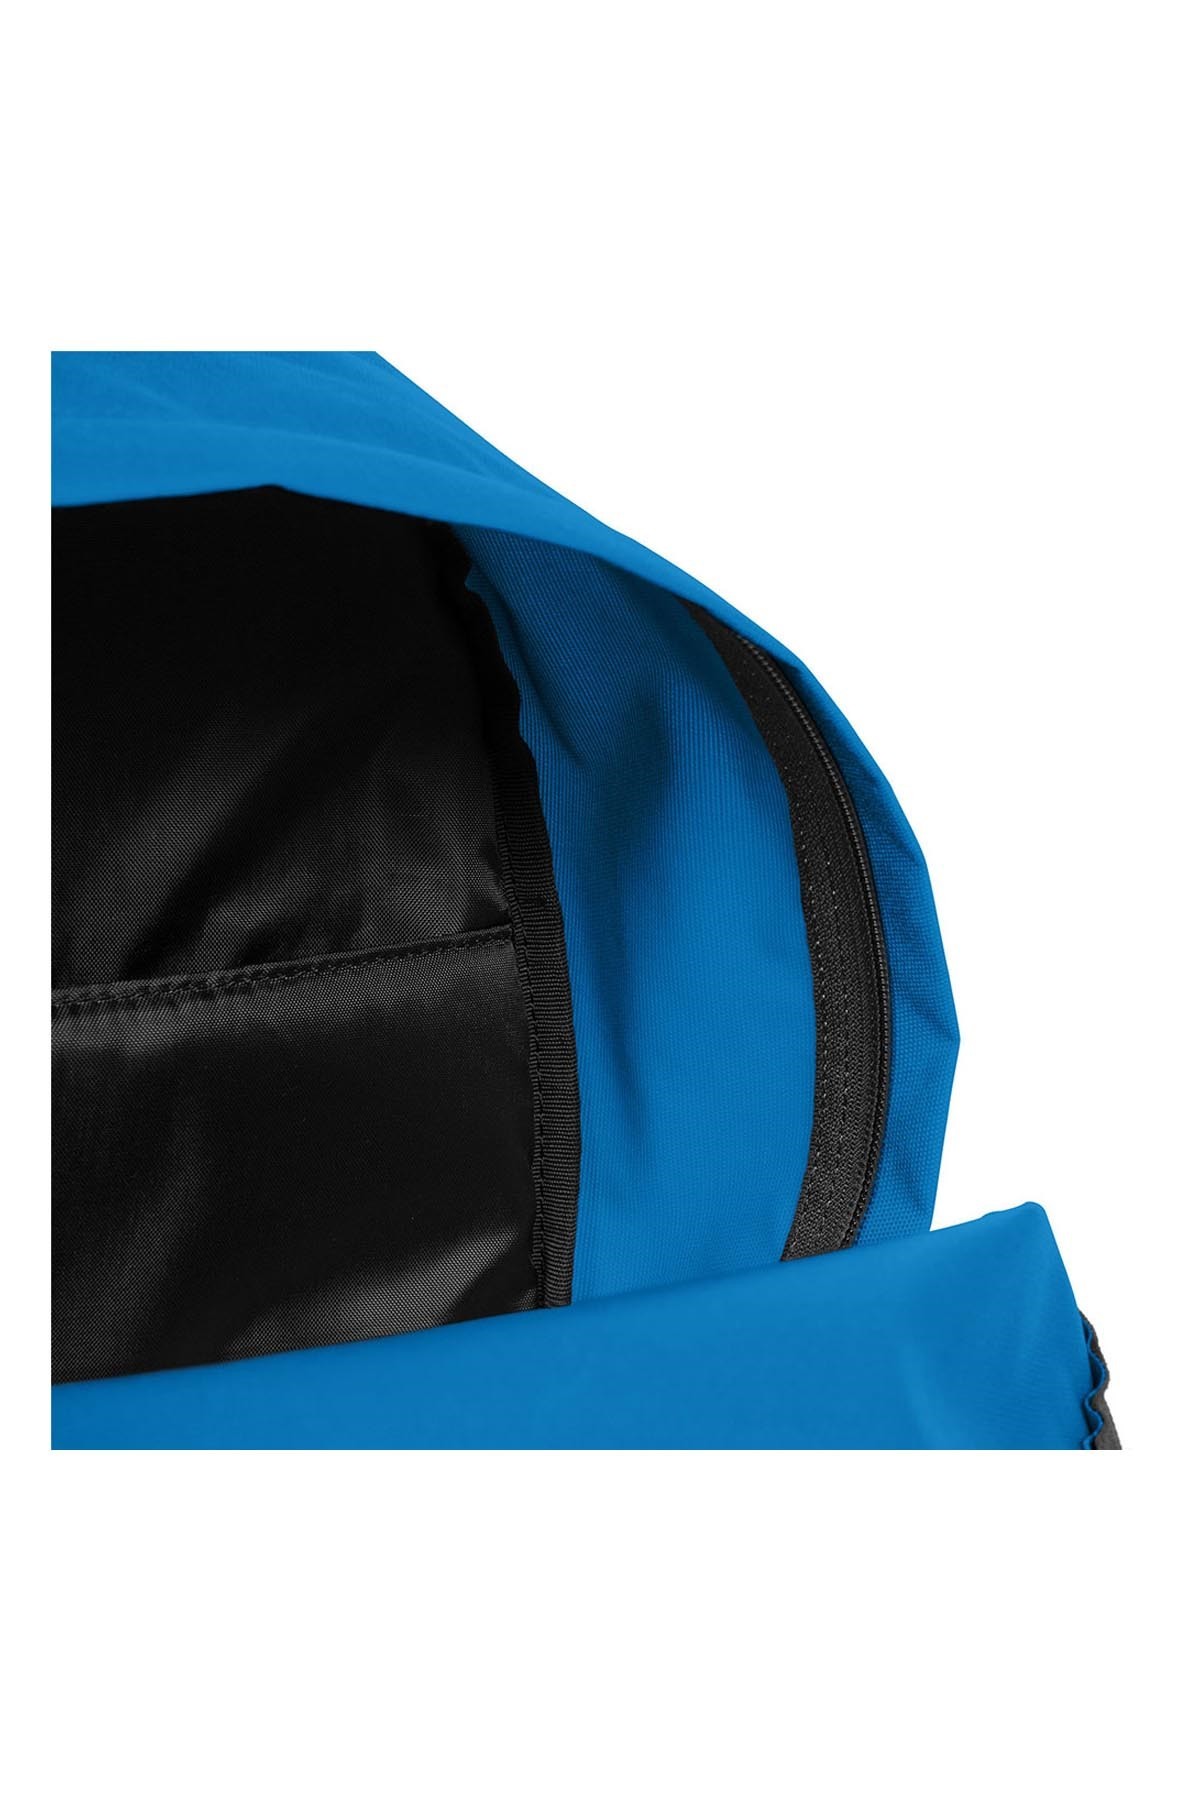 Eastpak Padded Zippl'R + Bang Blue Sırt Çantası Mavi